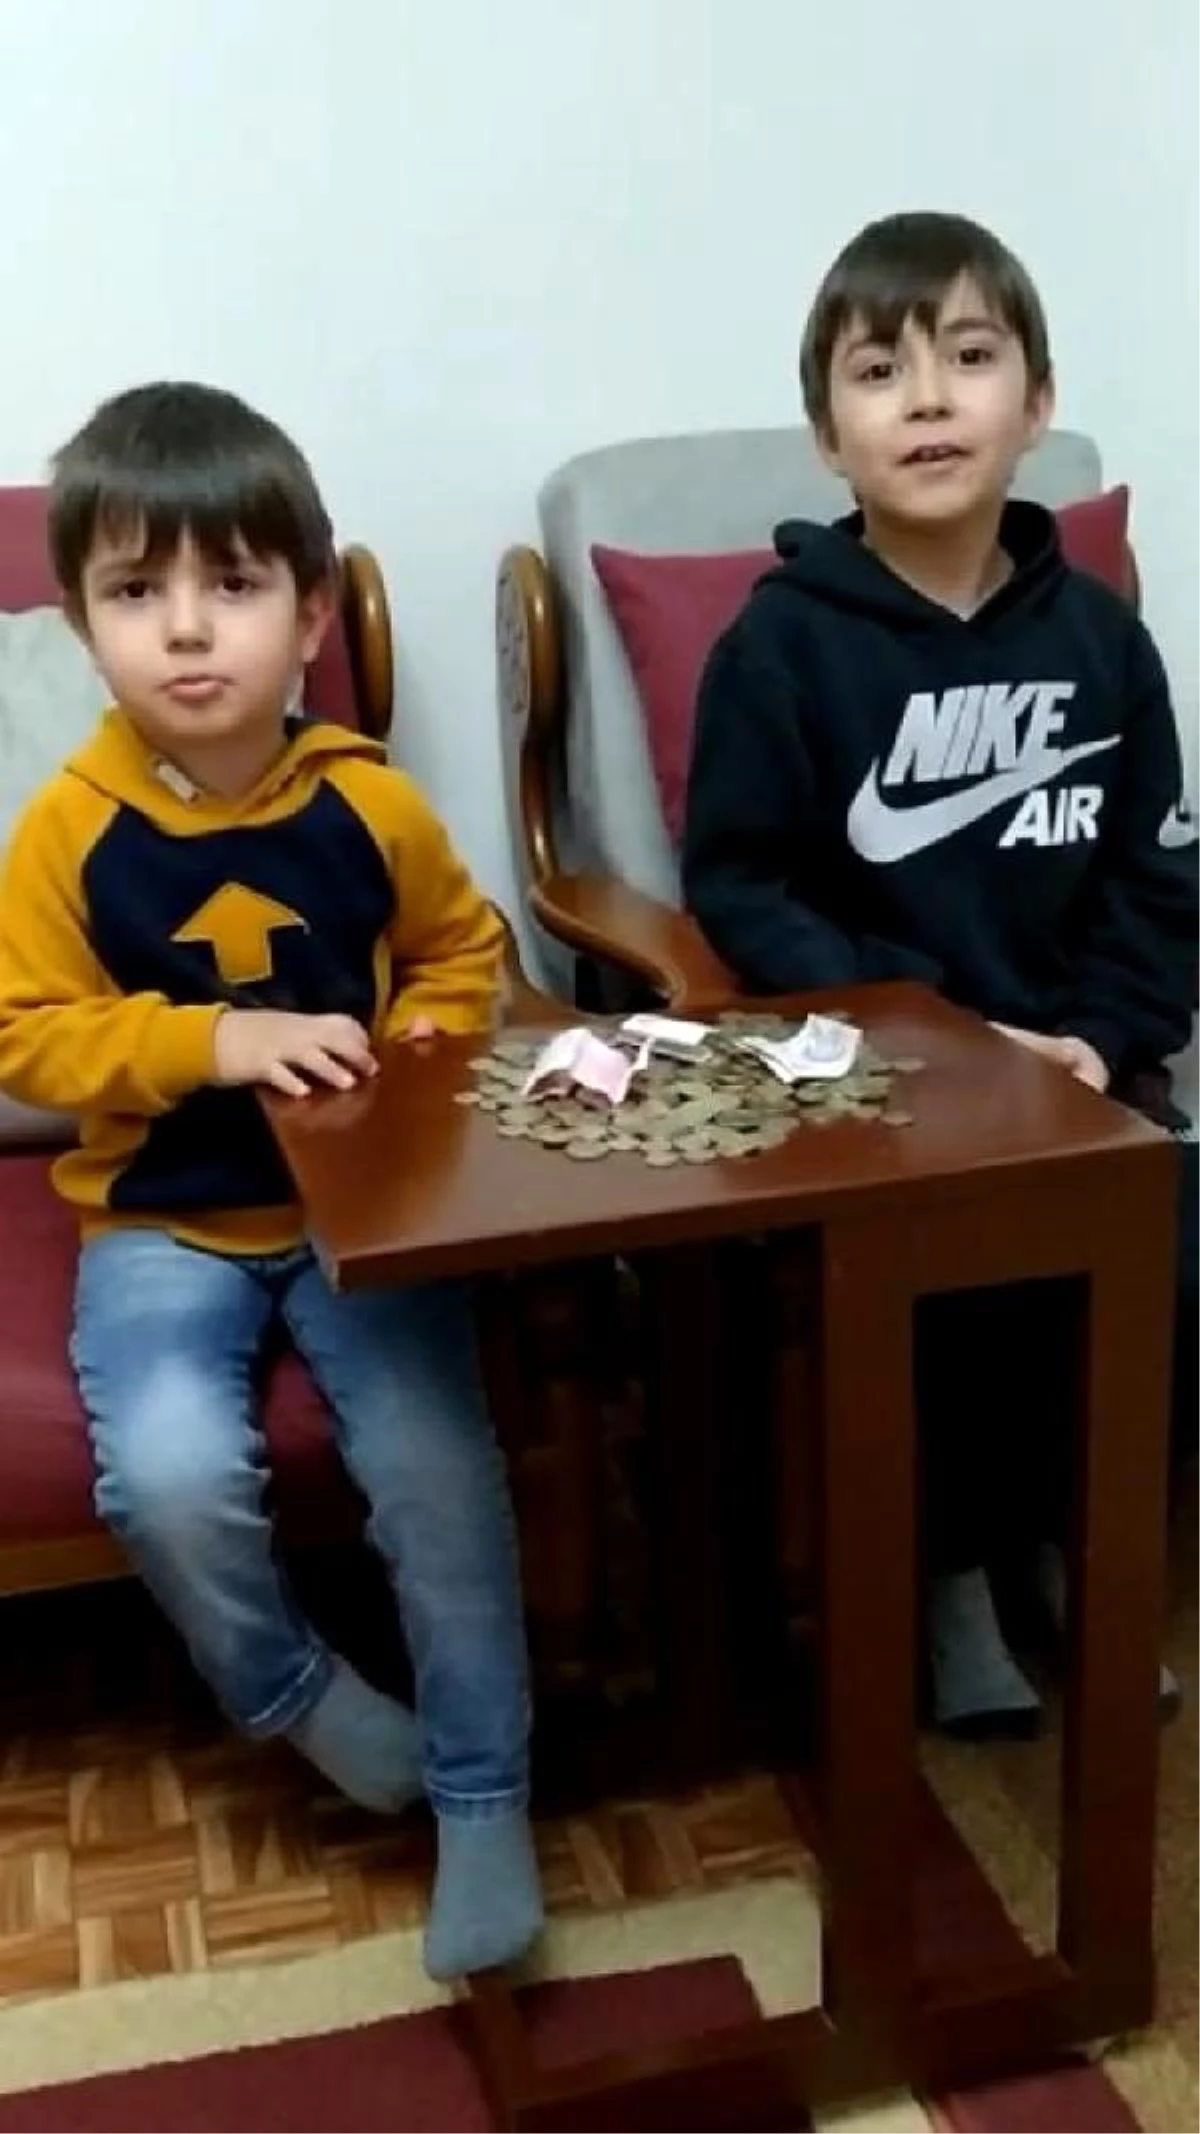 İki kardeş, kumbaradaki paralarını bağışladı